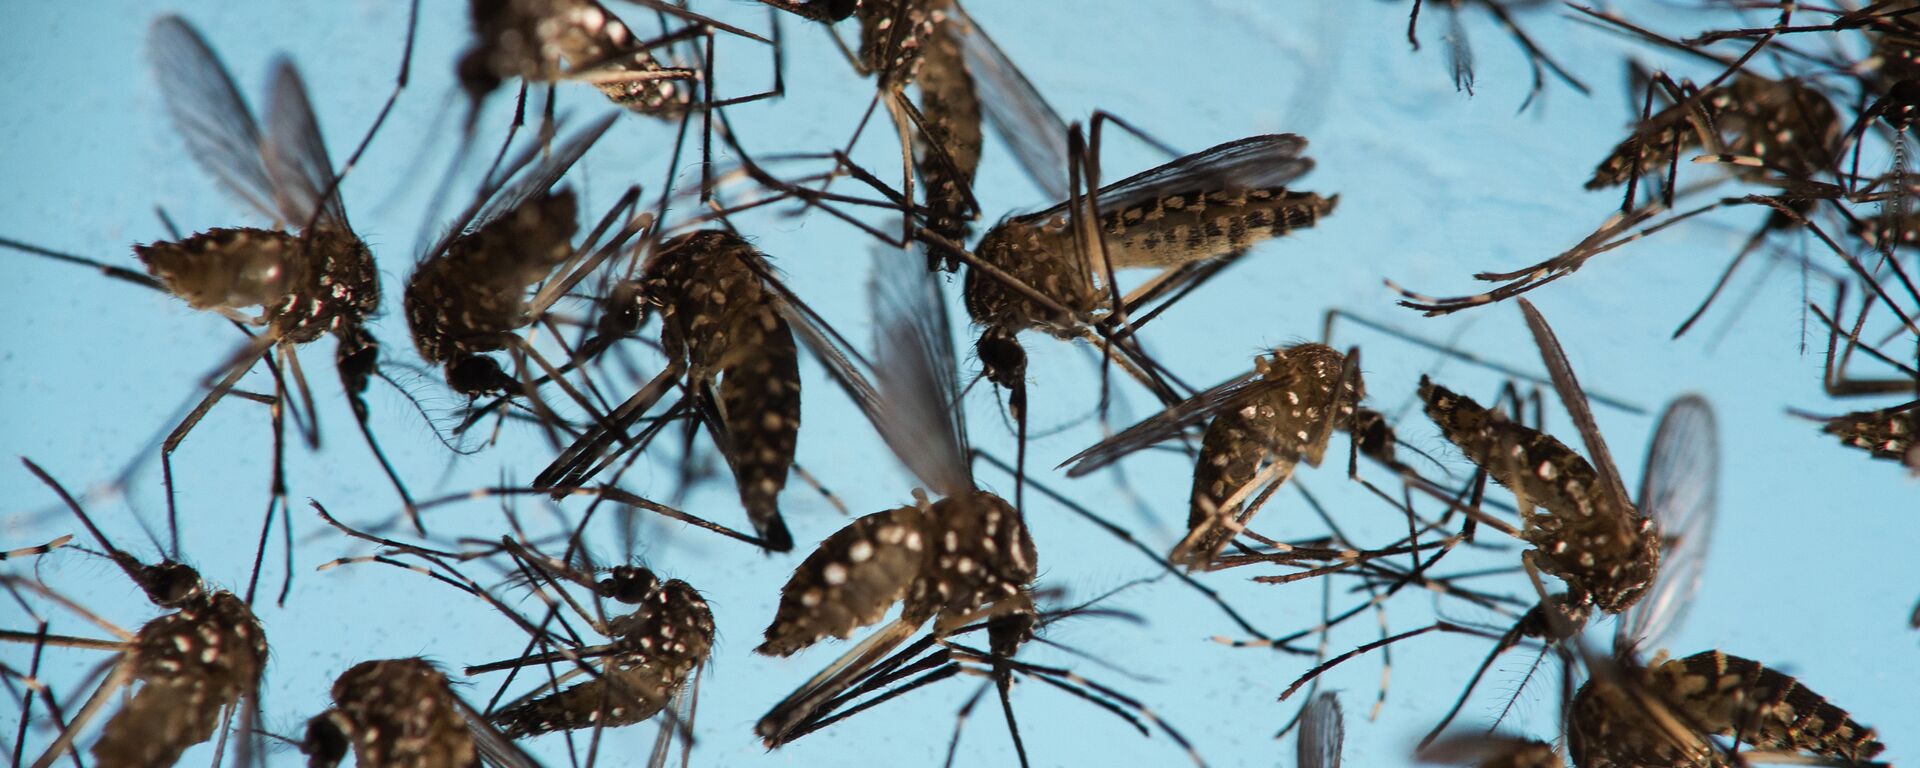 Mosquitos Aedes aegypti, causantes del Zika - Sputnik Mundo, 1920, 08.01.2021